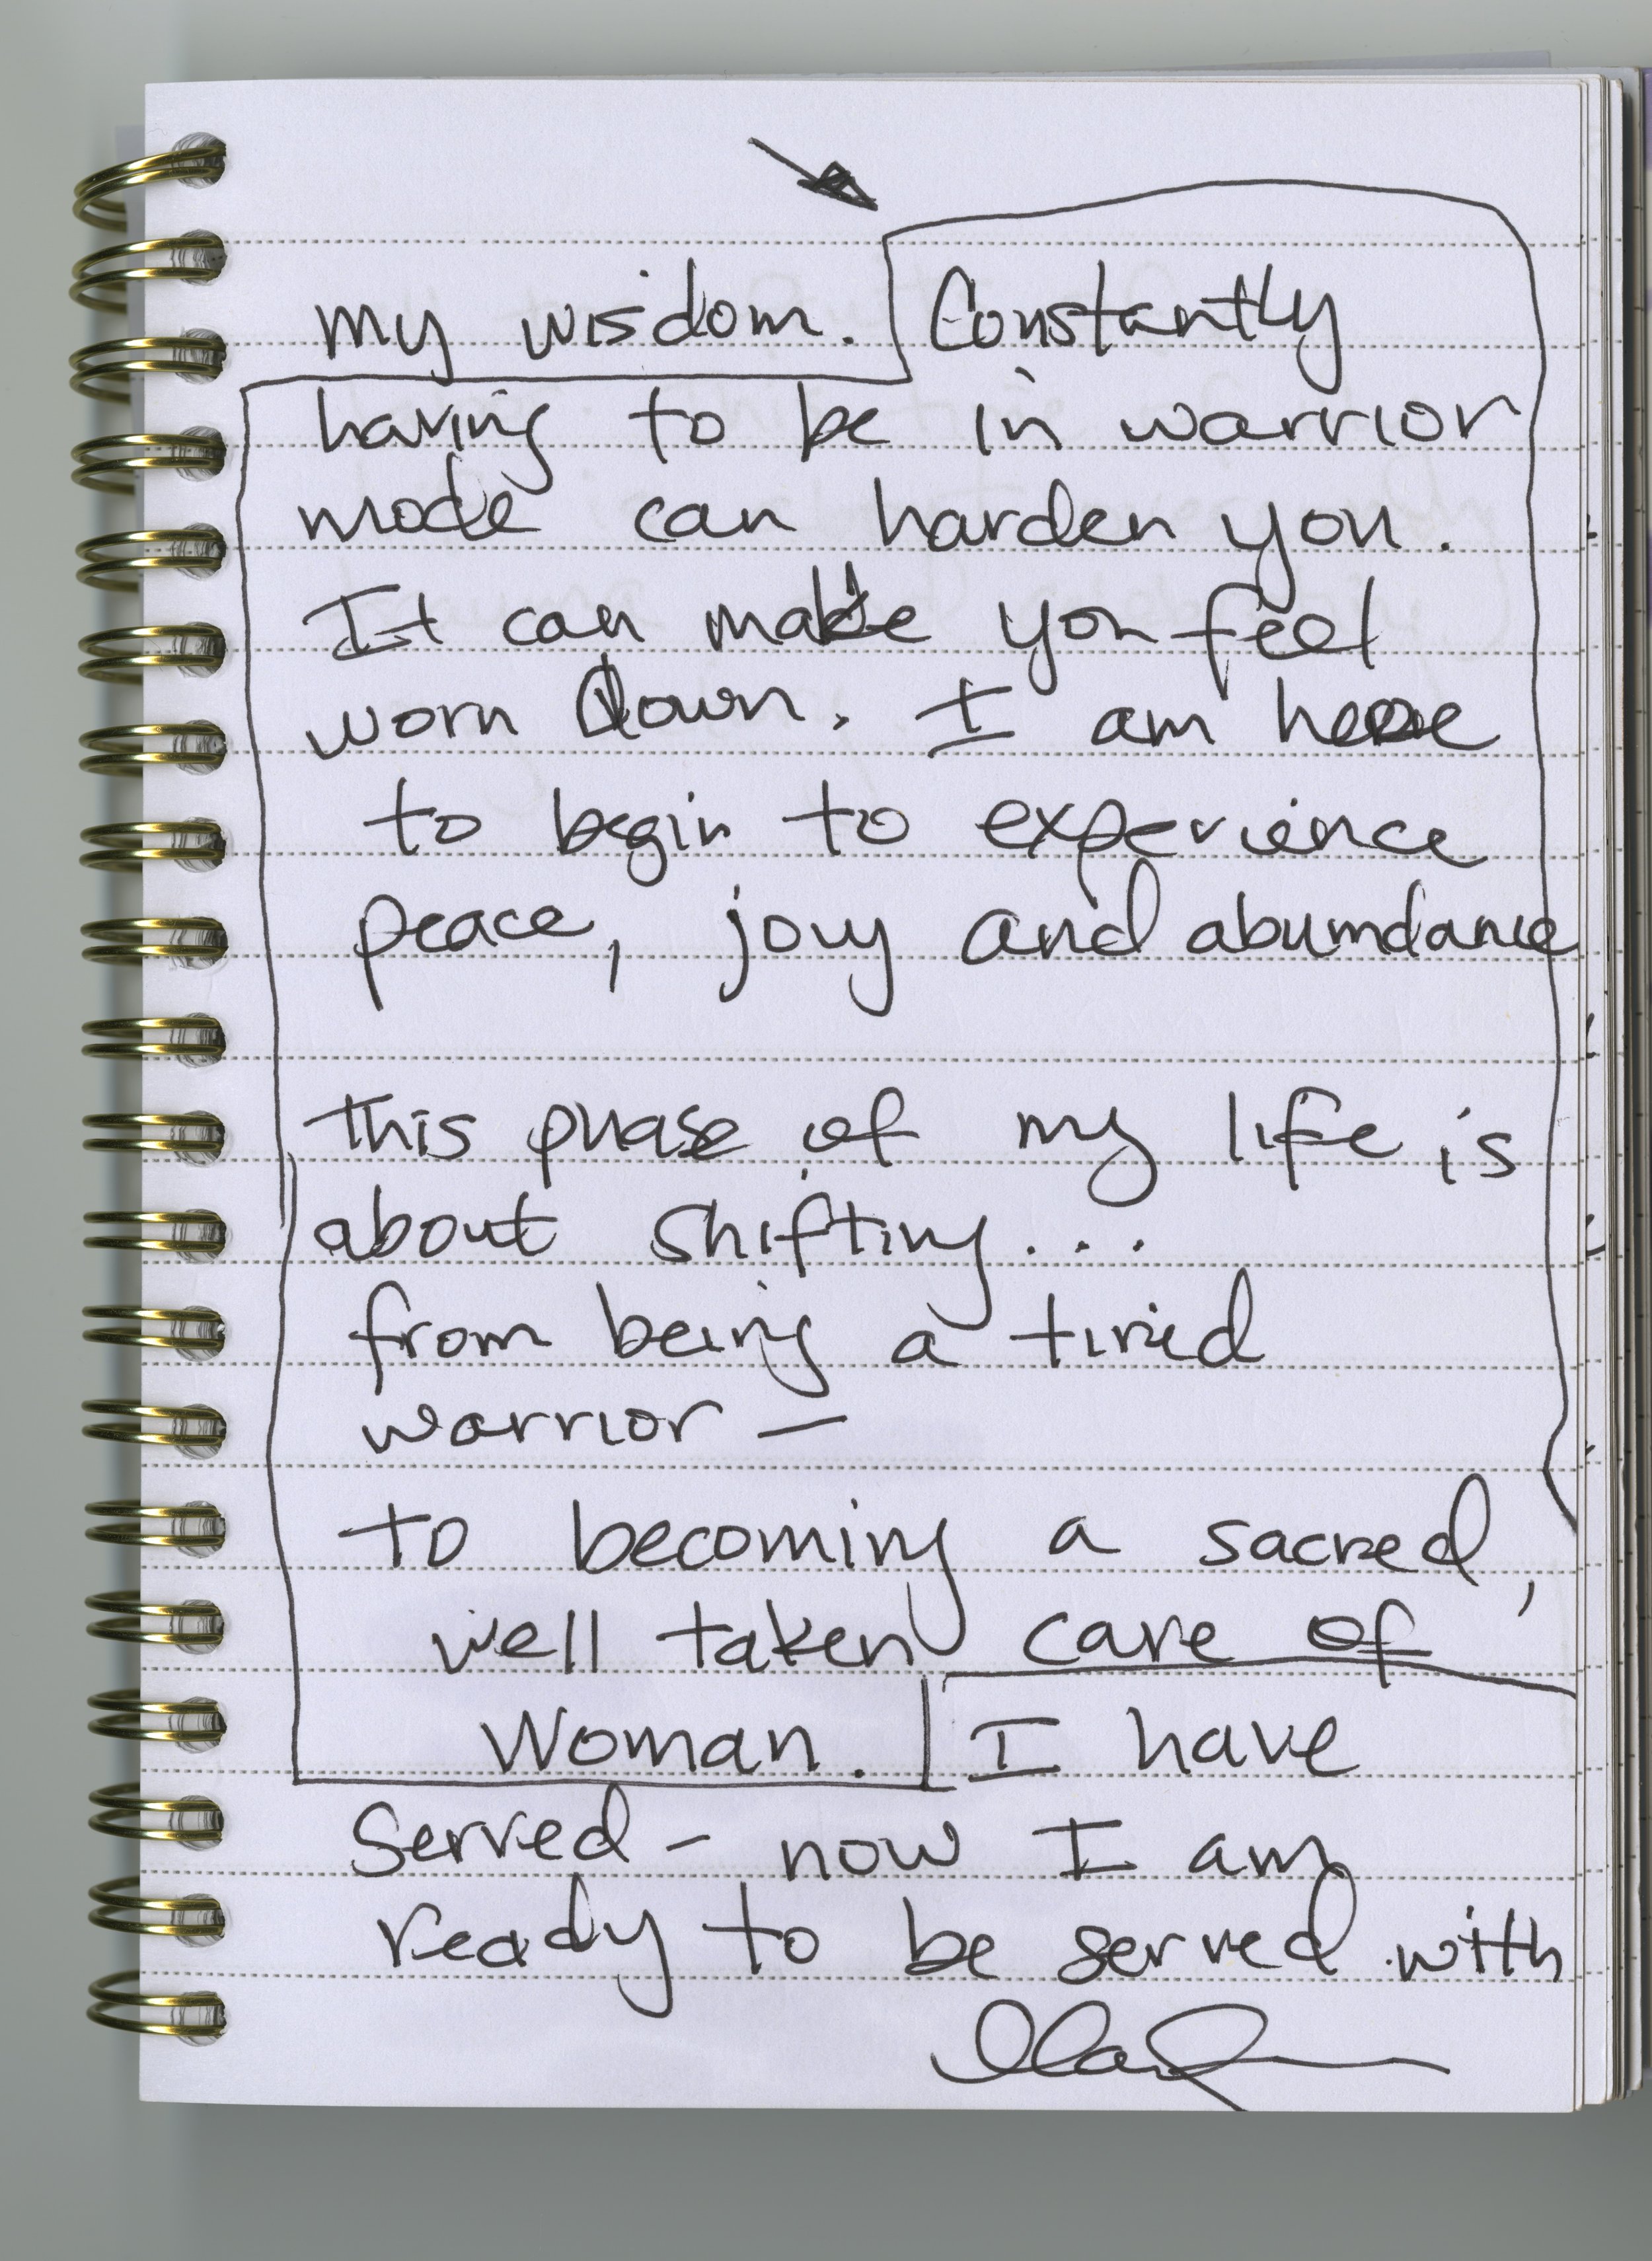 Marianna Sousa's handwritten journal entry.